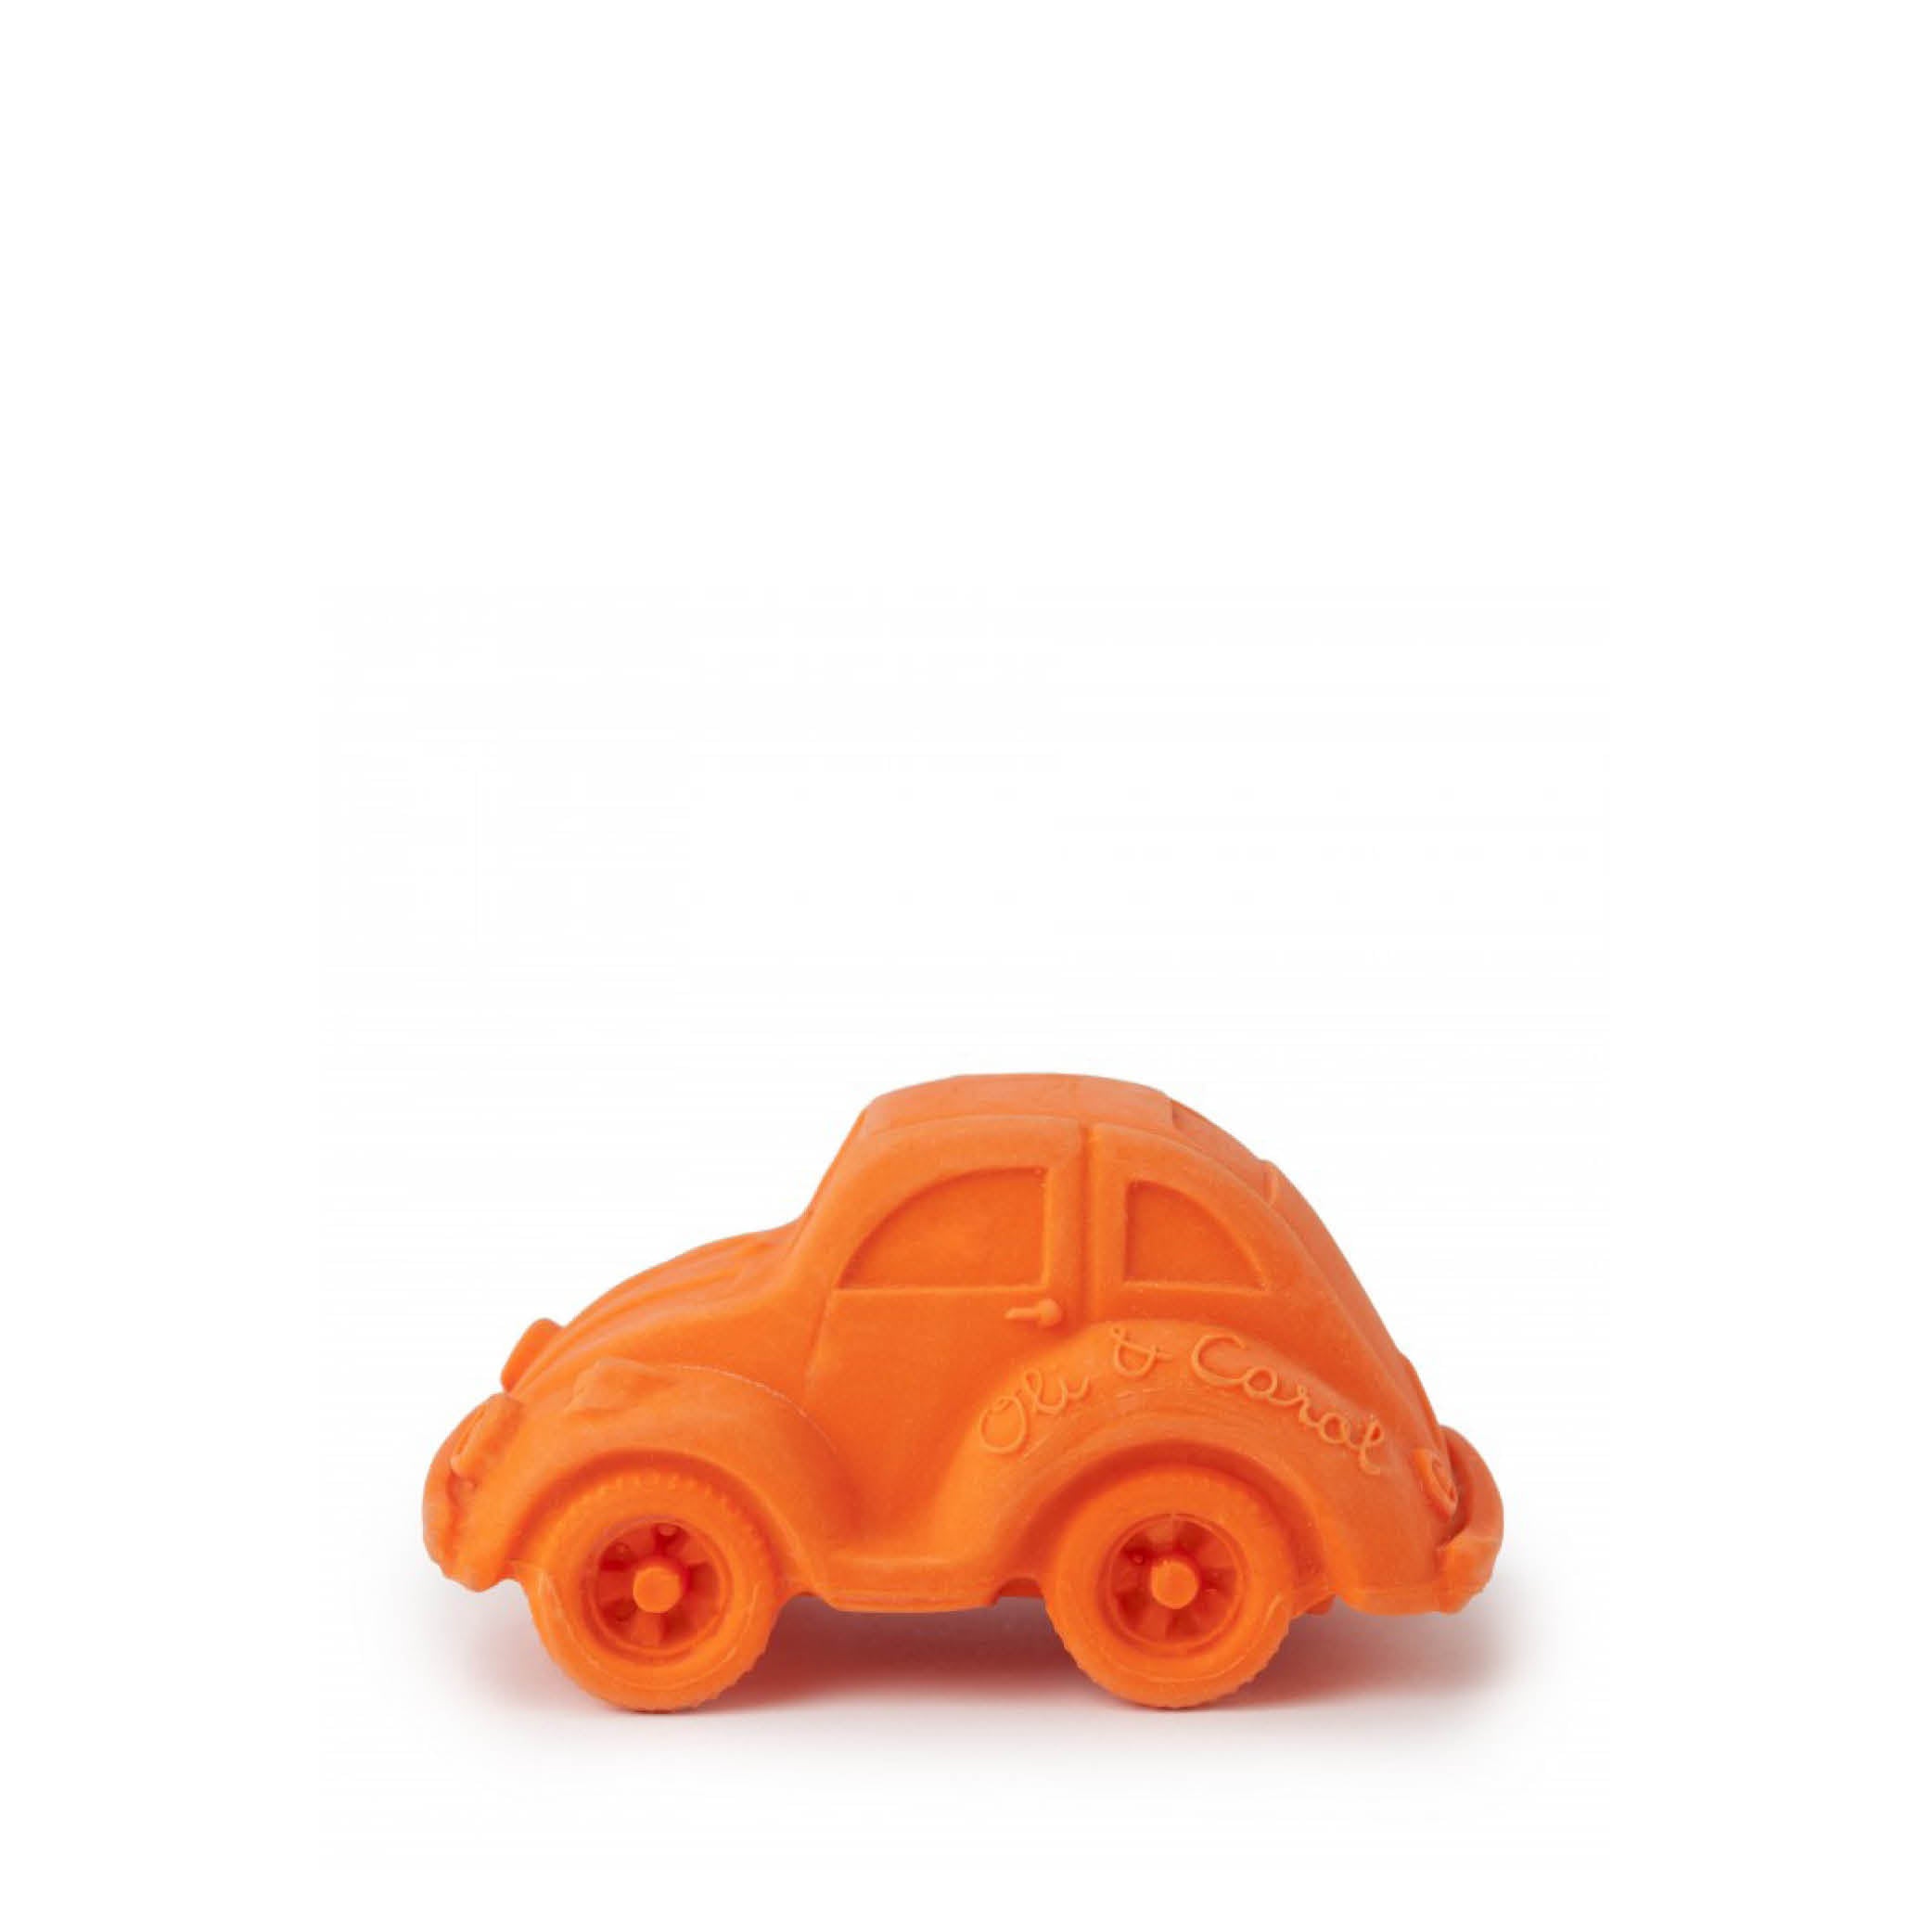 Baby Zahnspielzeug Beißring Teether Carlito in orange aus Naturkautschuk und von Hand bemalt mit speiseechten Farben - 100% natürlich von Oli und Carol bei kinder und konsorten Düsseldorf